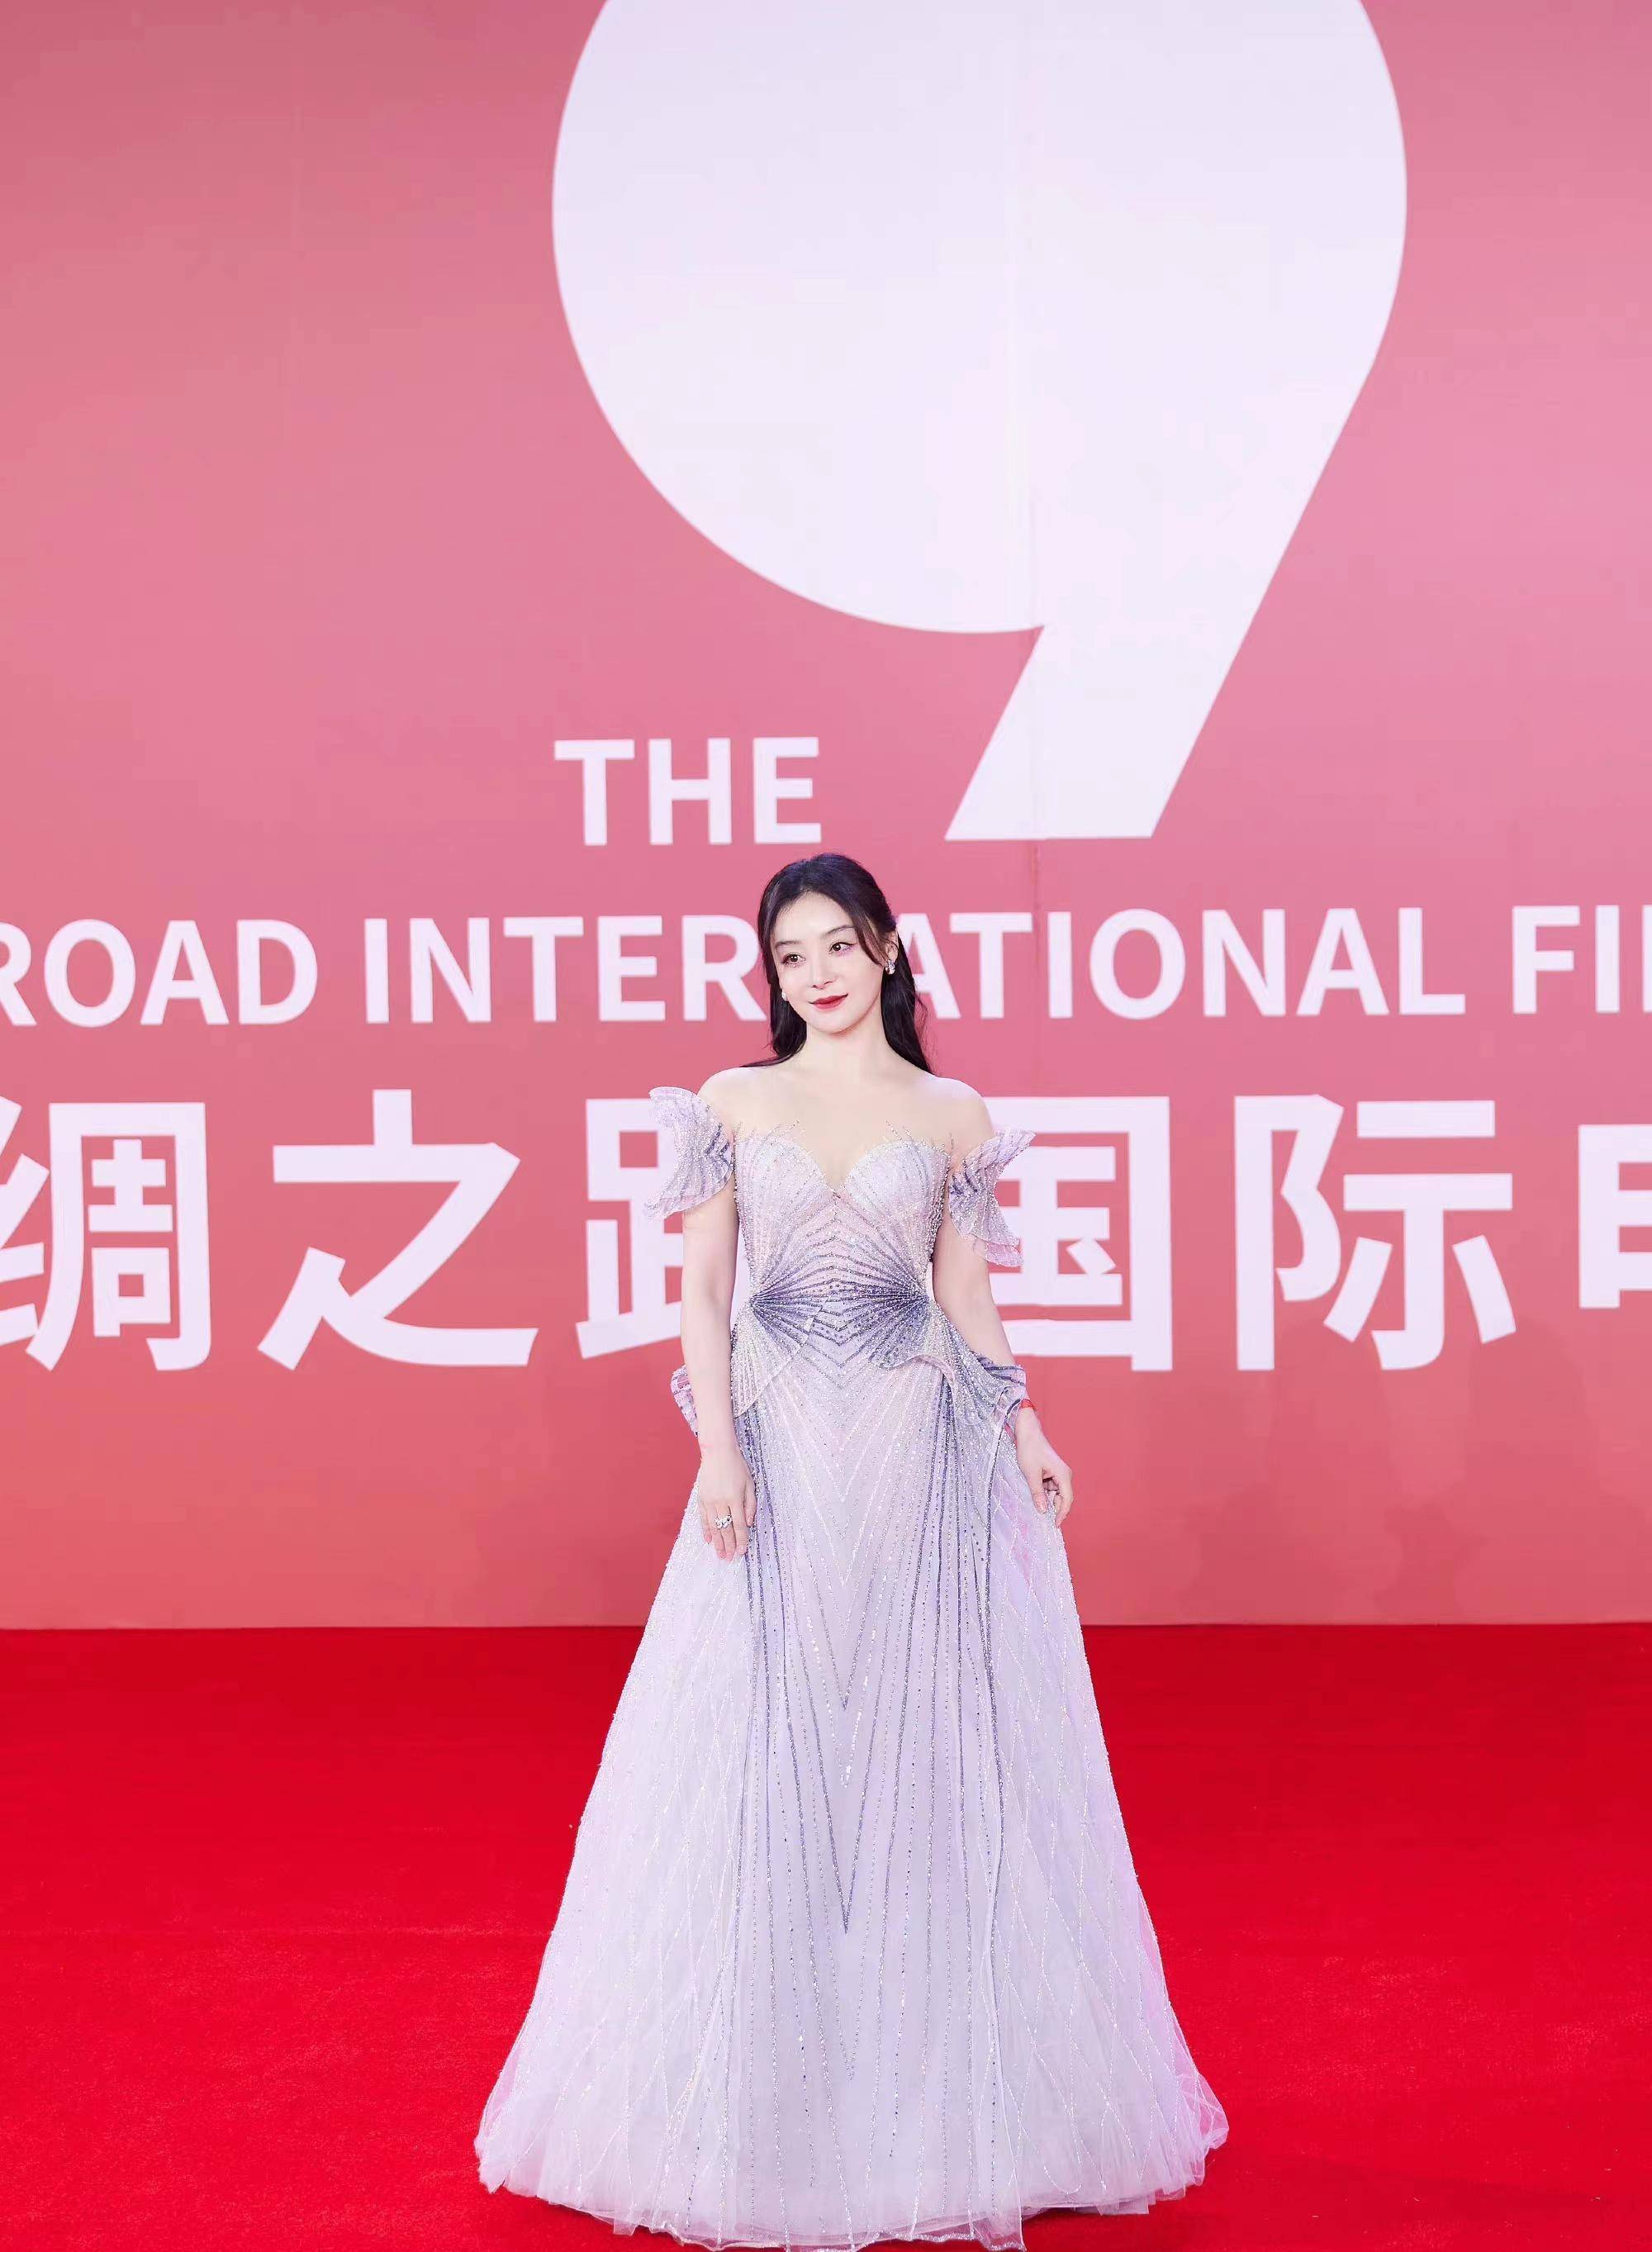 袁姗姗现身丝路国际电影节,一袭银色长裙亮相红毯,优雅大方!